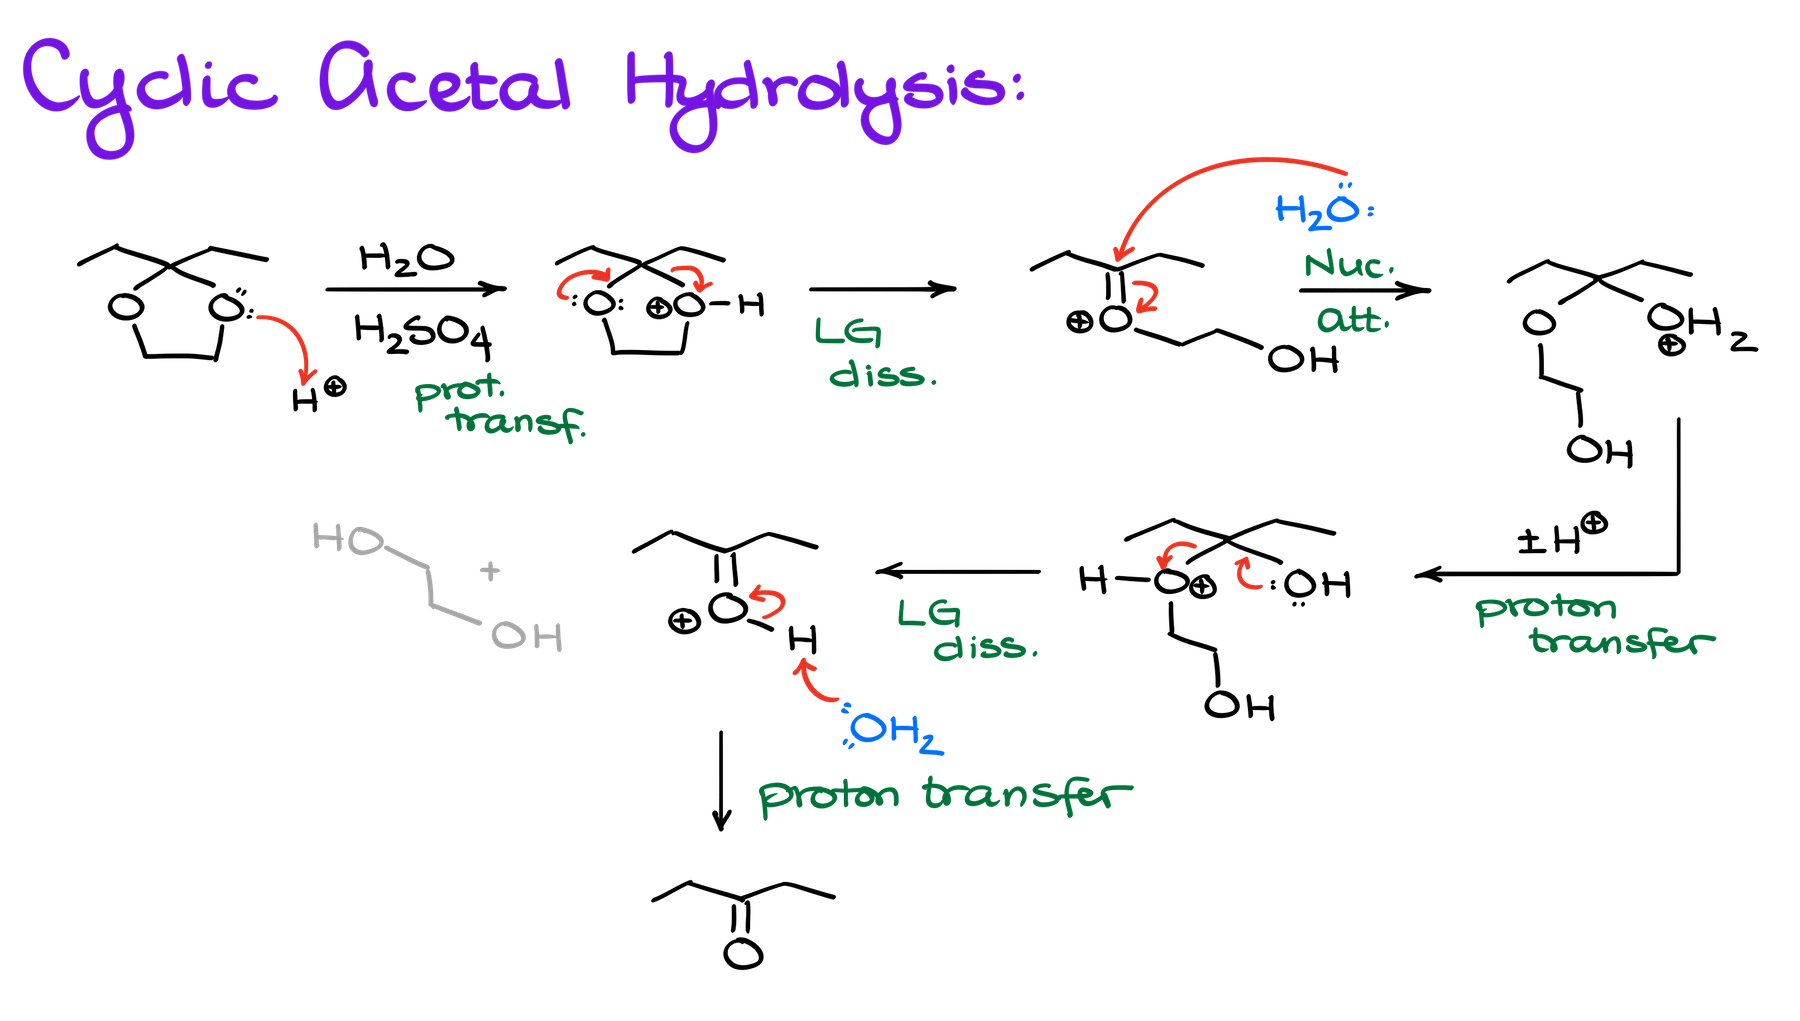 cyclic acetal hydrolysis